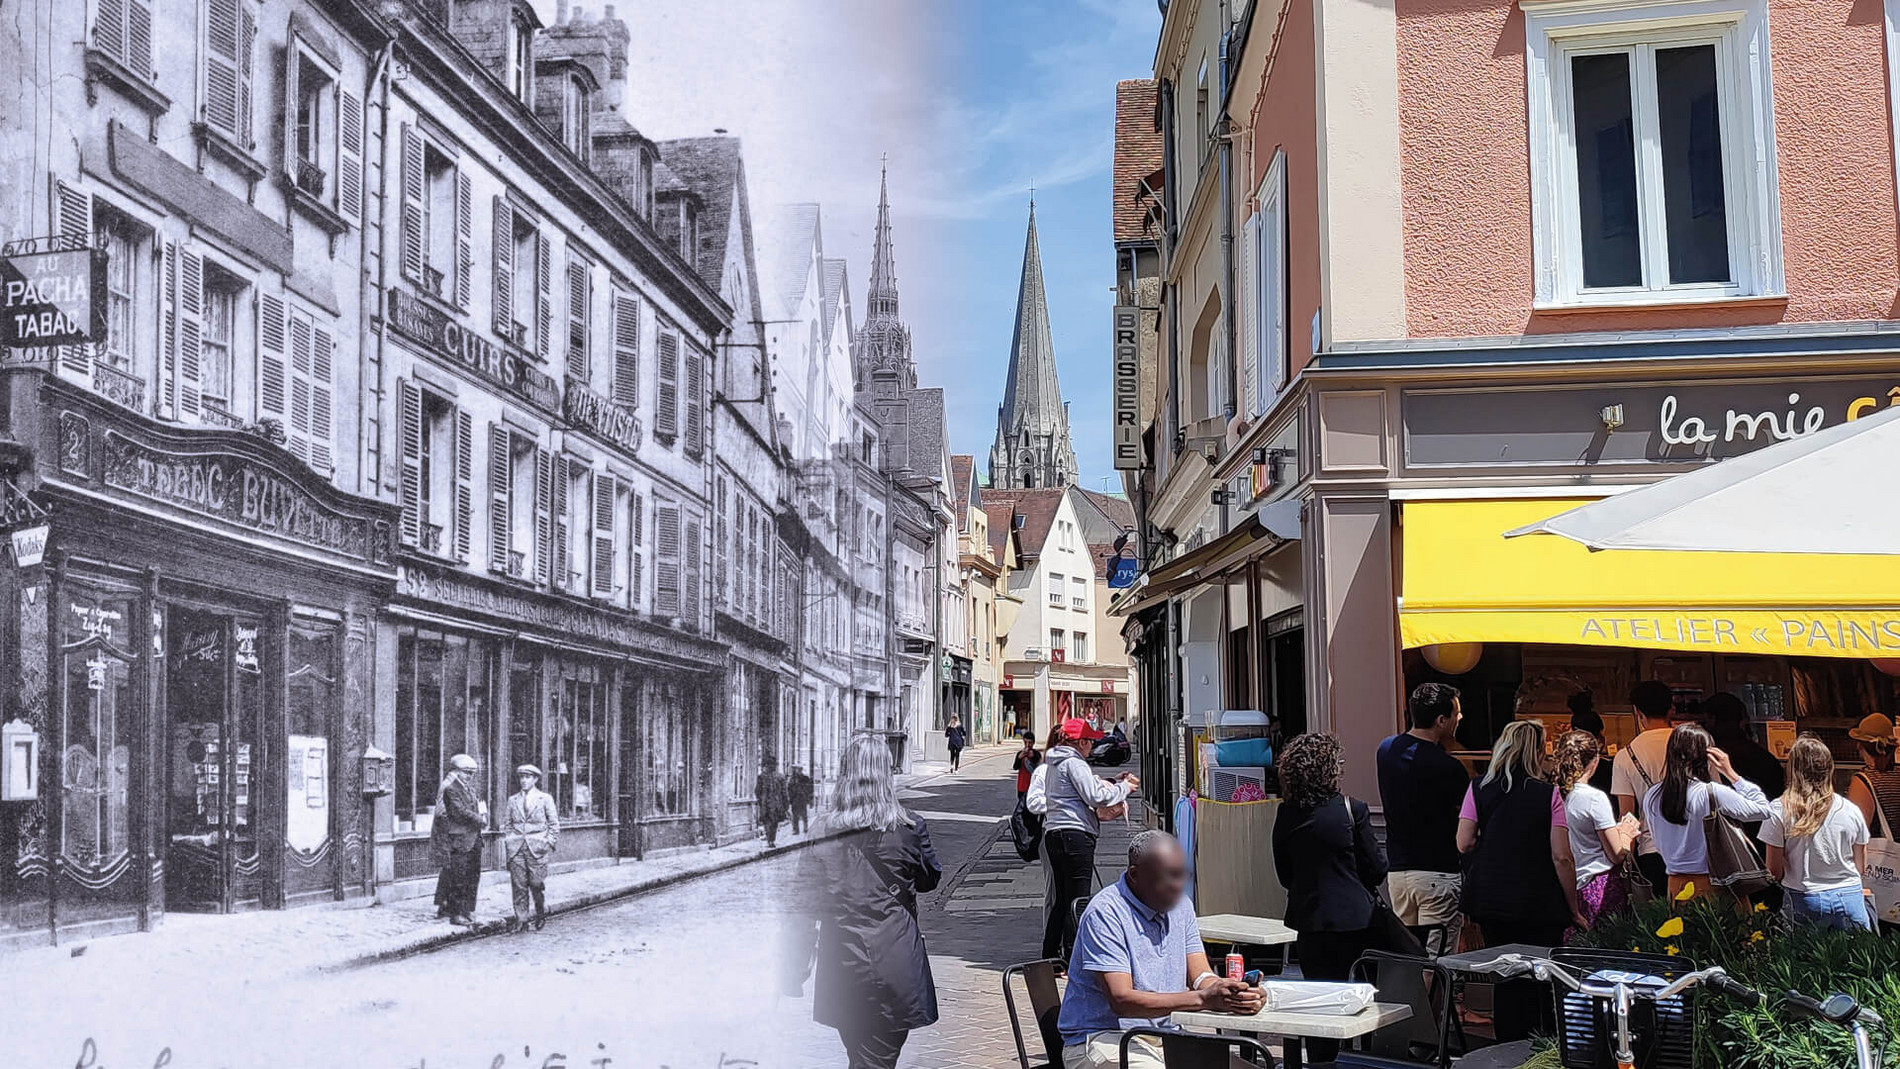 Voyage dans le temps : recréer le Chartres d'autrefois – une exposition virtuelle et collaborative